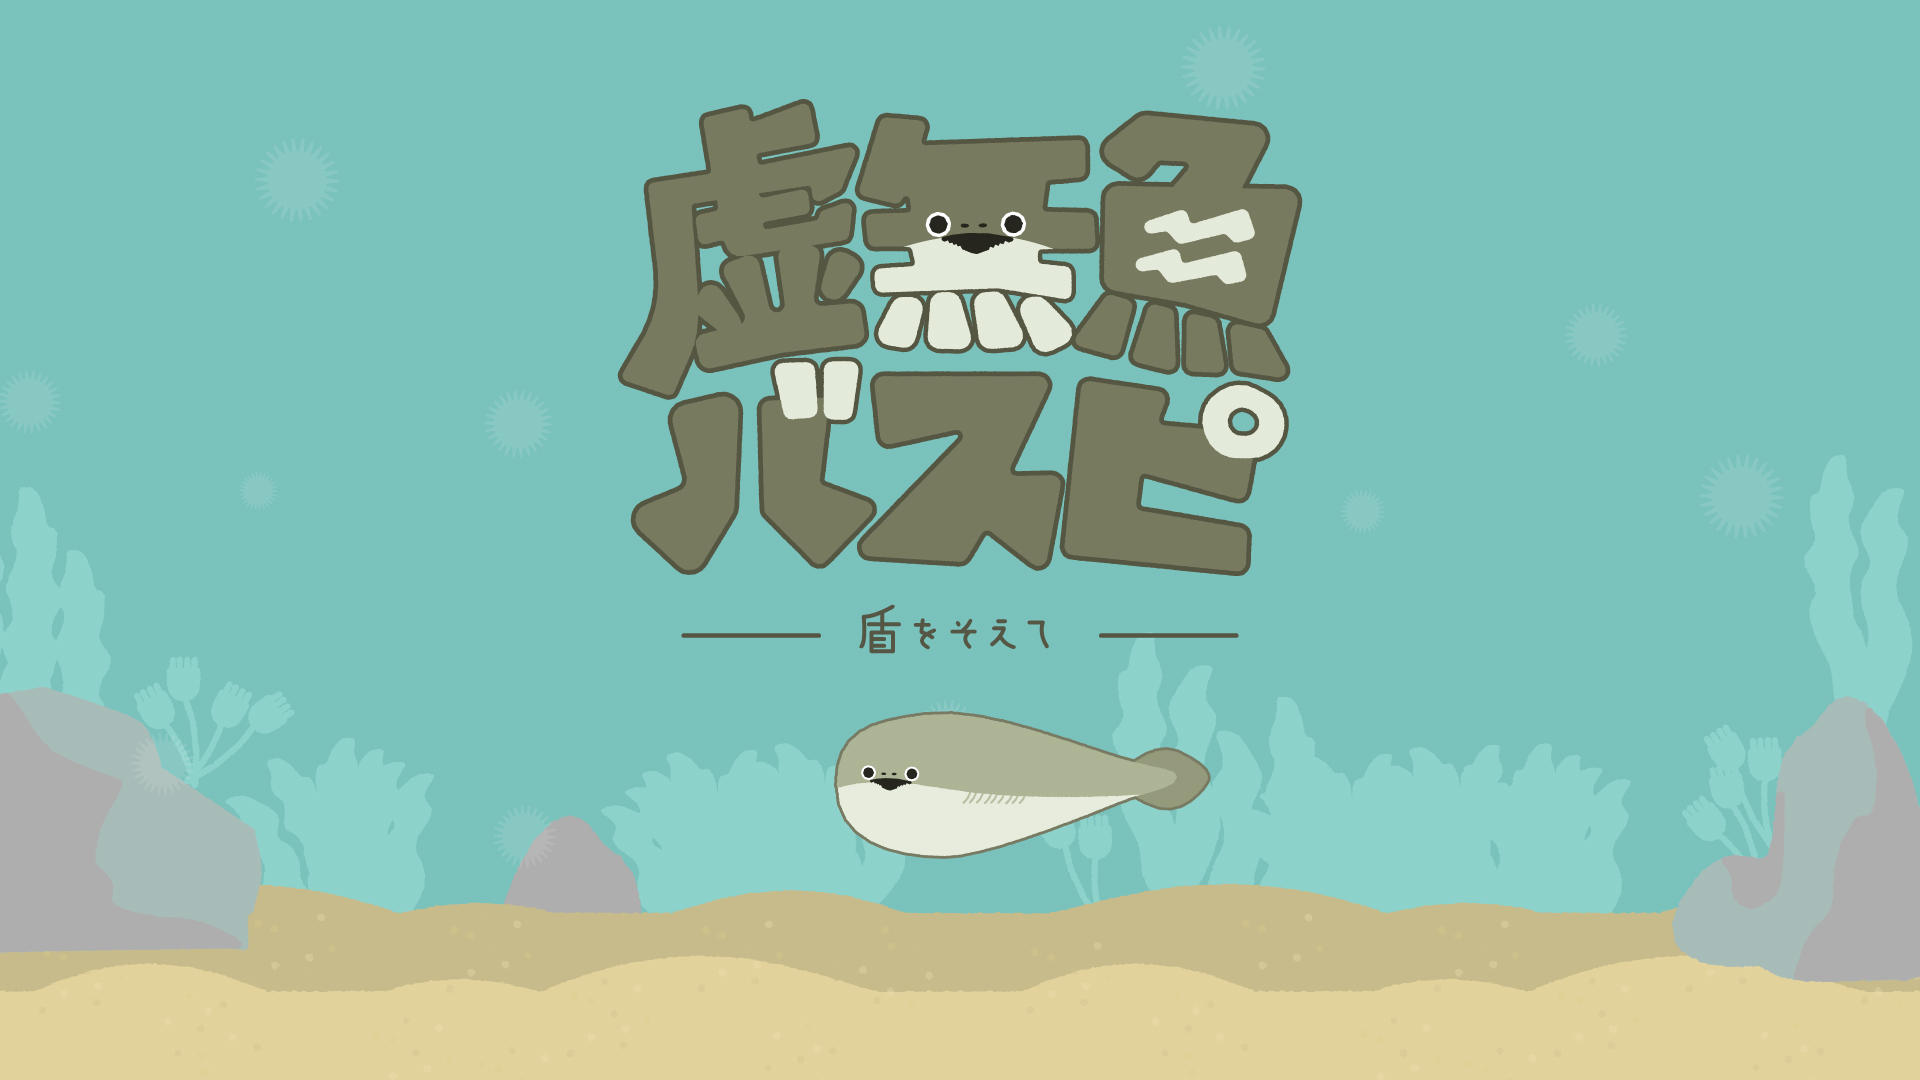 Banner of 虚无鱼BasPi! 1.5.8